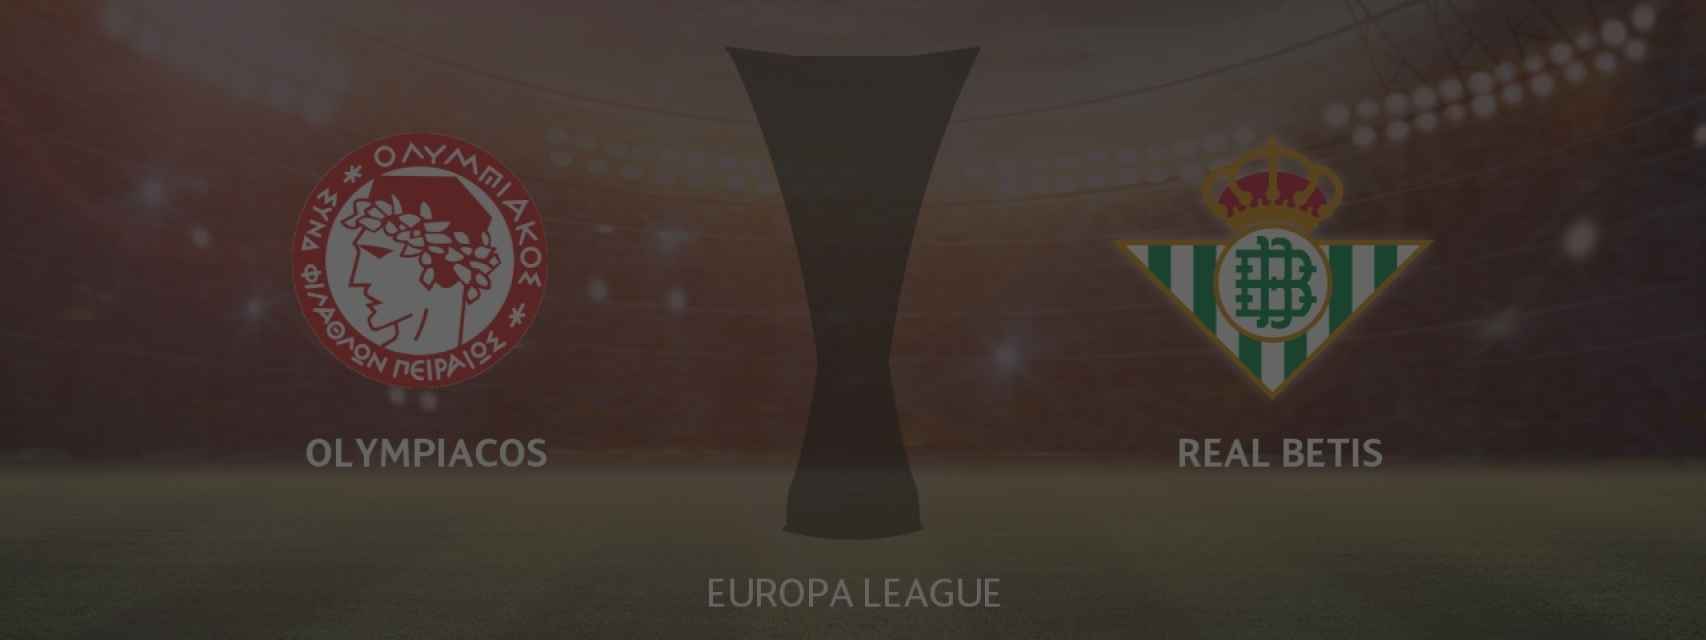 Olympiacos - Real Betis, siga en directo el partido de la Europa League